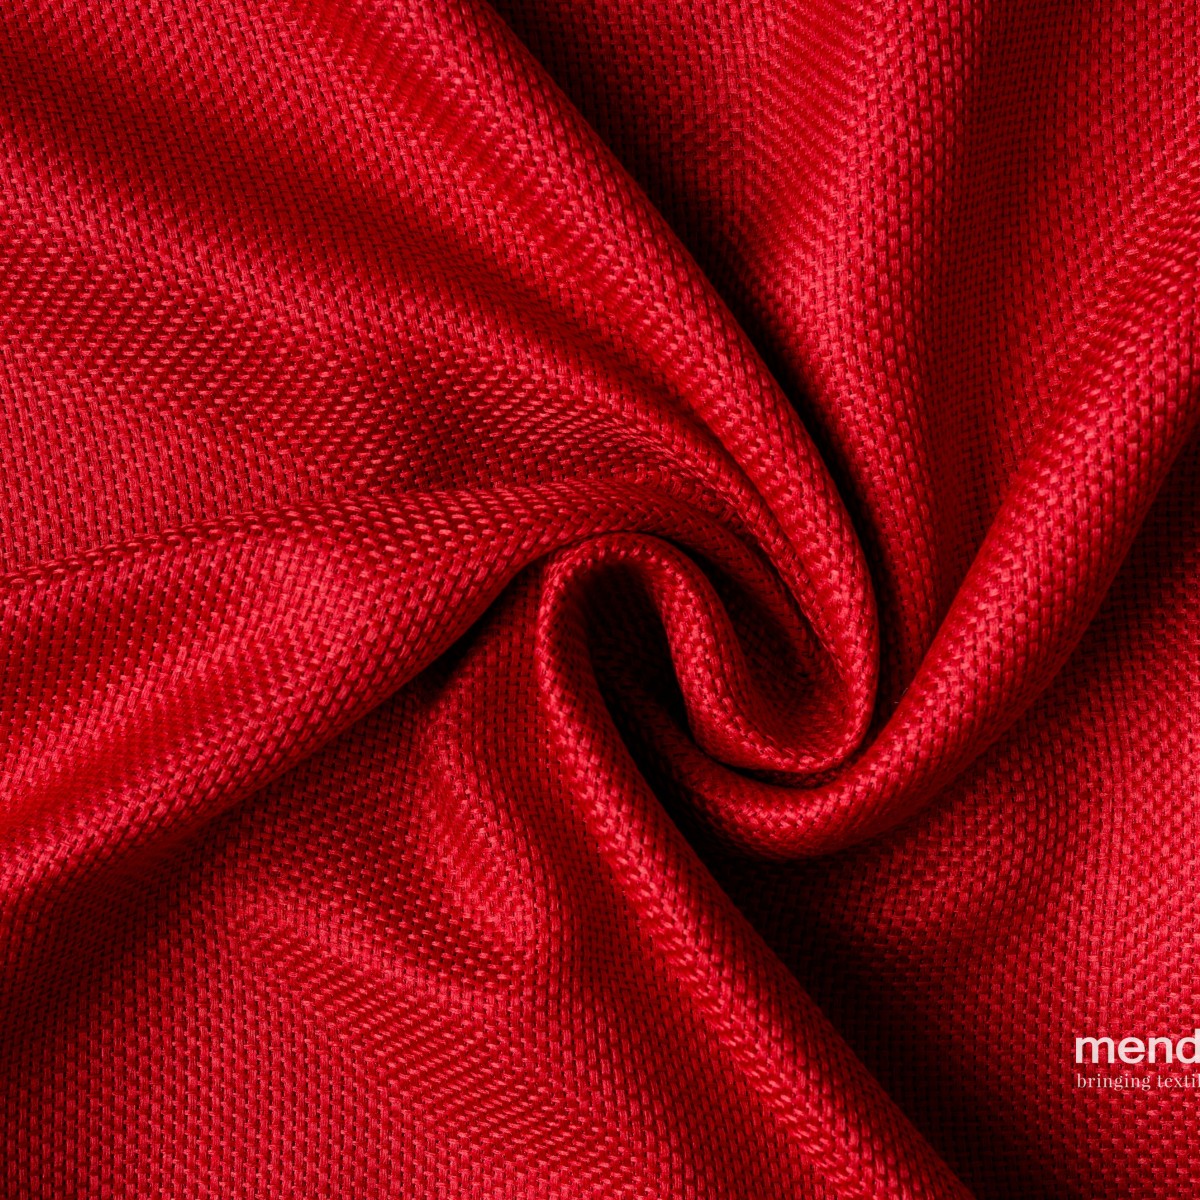 Draperii Mendola fabrics MDF-237-CHEER. Conține culorile: Roșu, Roșu Maroniu, Roșu, Roșu Închis, Roșu, Roșu Pur, Roz, Roz Antic, Portocaliu, Portocaliu Profund